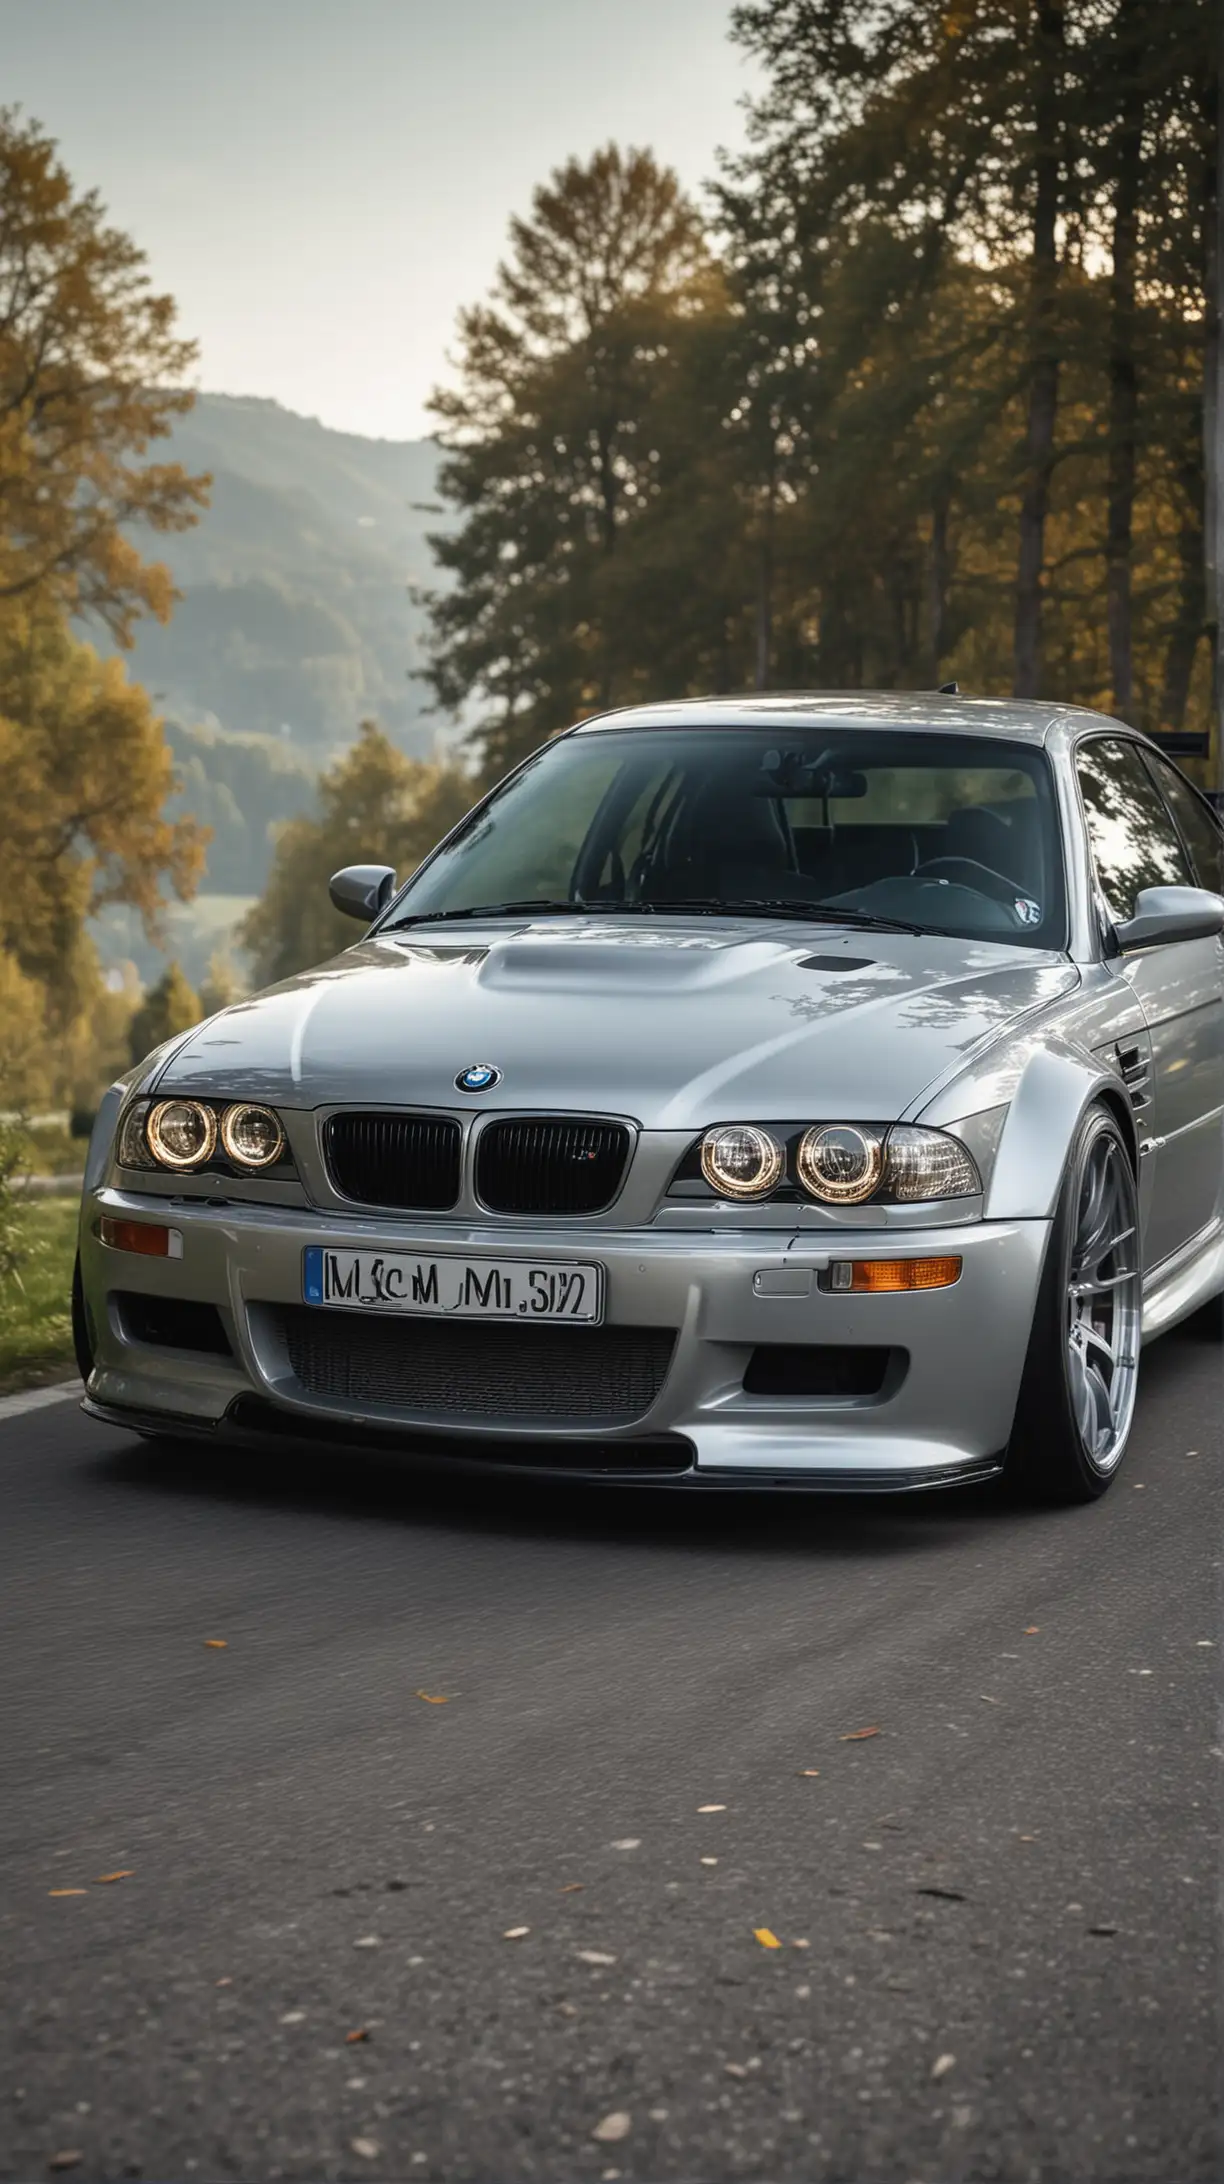  BMW M3 CSL (Coupe Sport Leichtbau) - серебряный цвет с включенными фарами, на заднем плане красивая природа